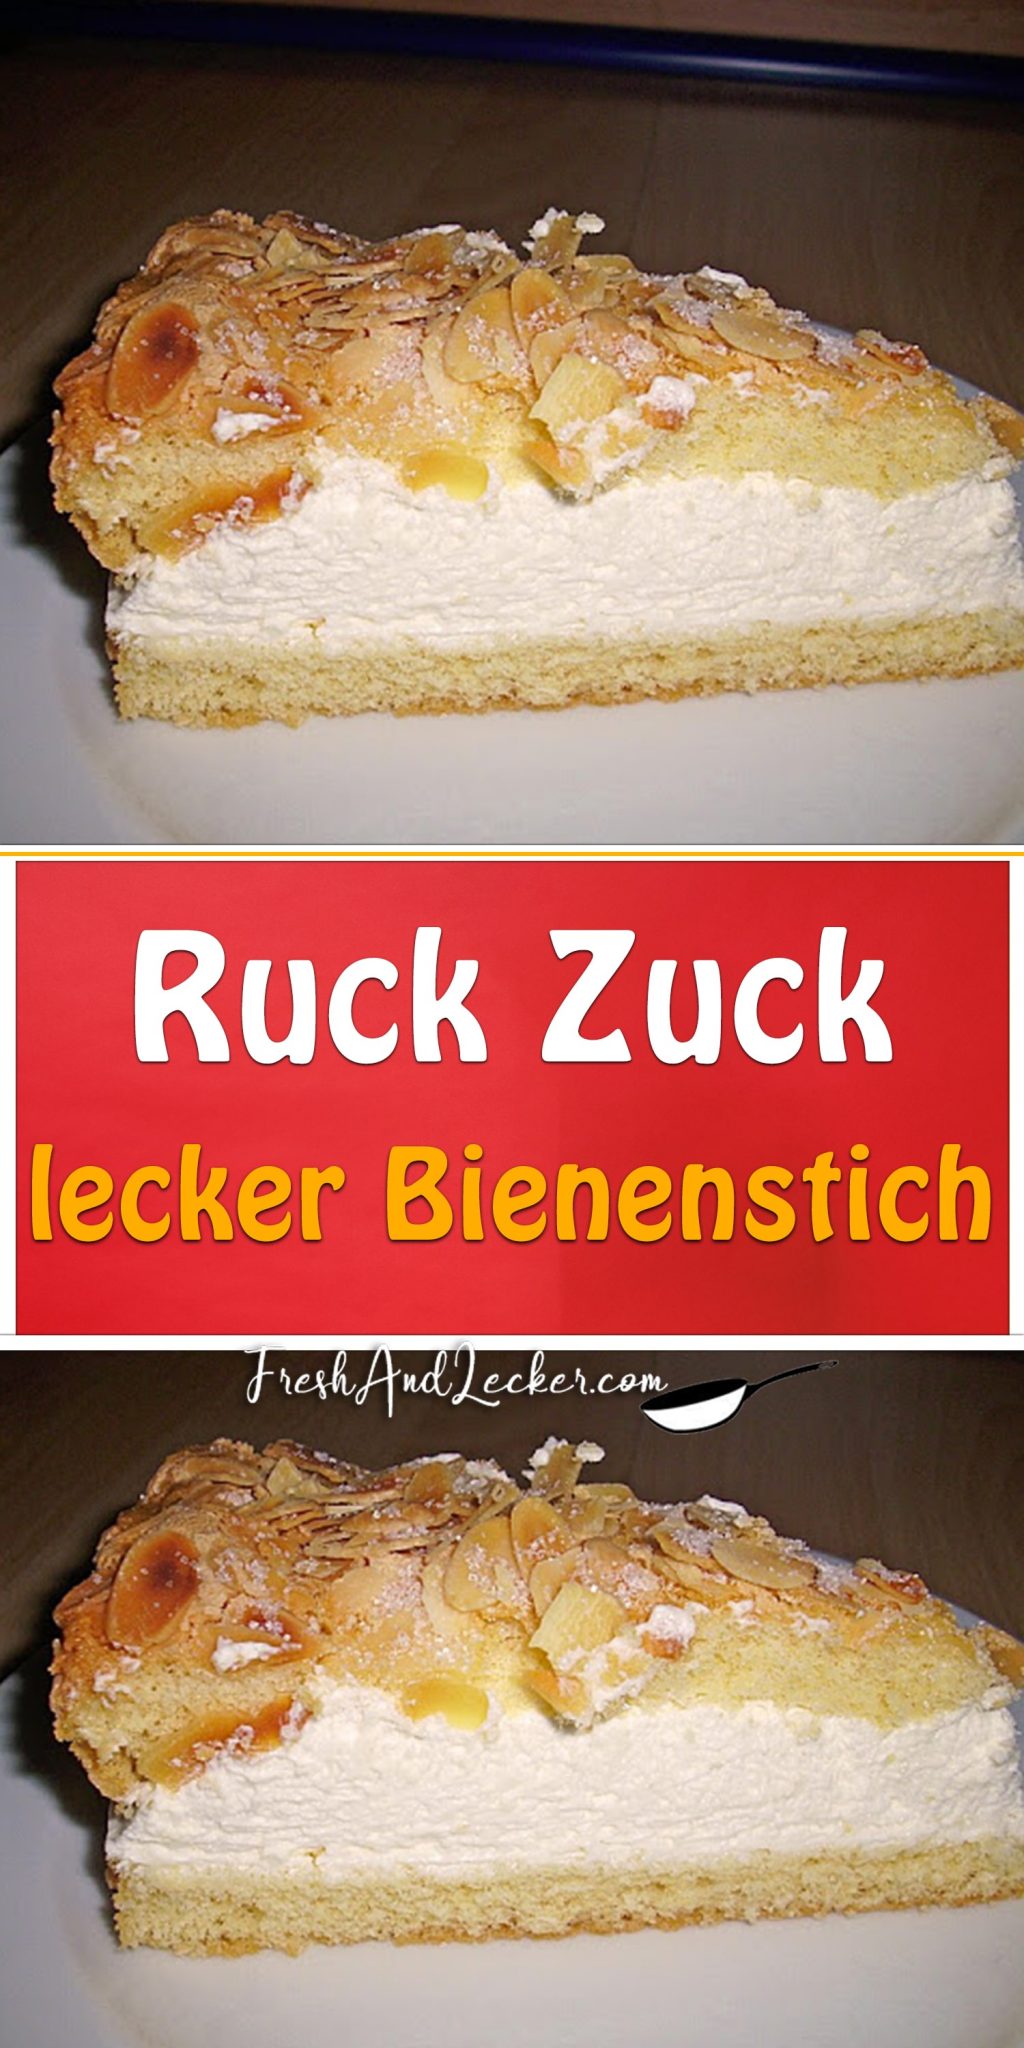 Ruck Zuck lecker Bienenstich - Fresh Lecker